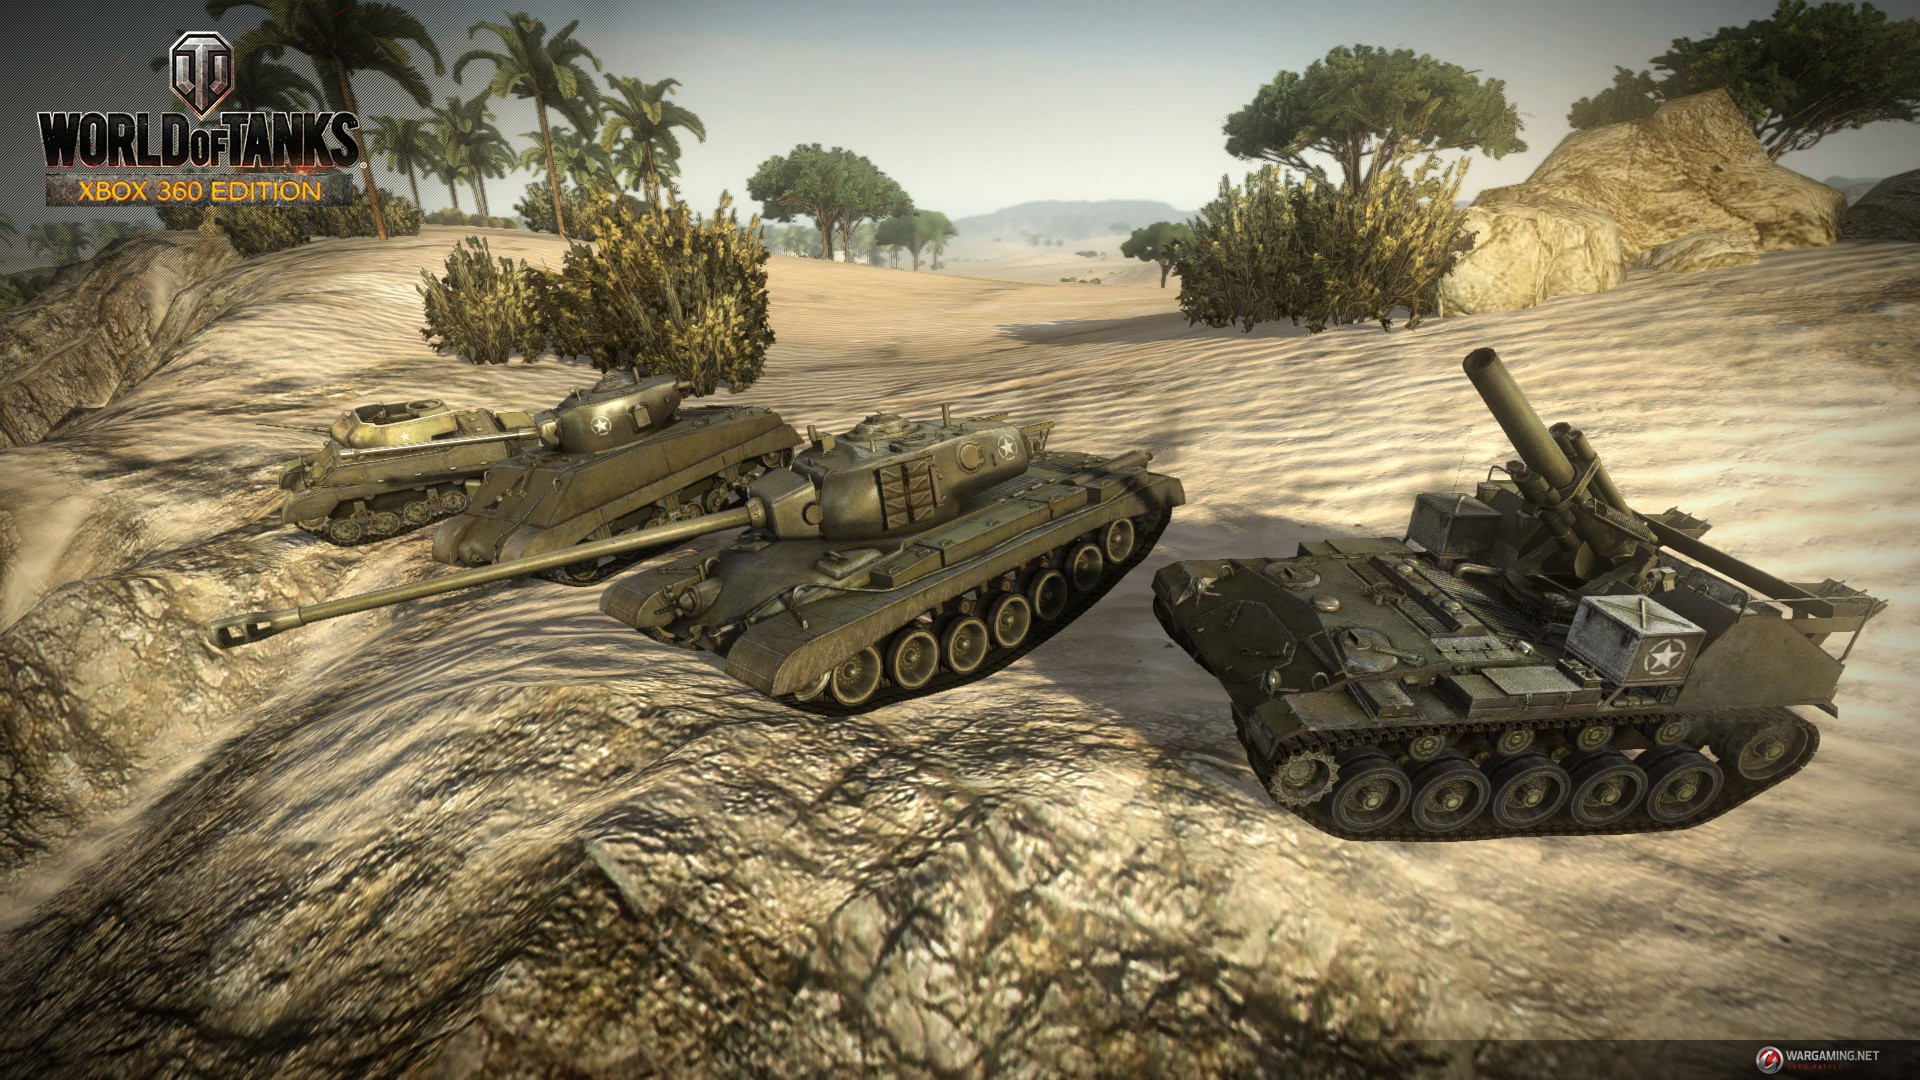 Фото танка из игры world of tanks